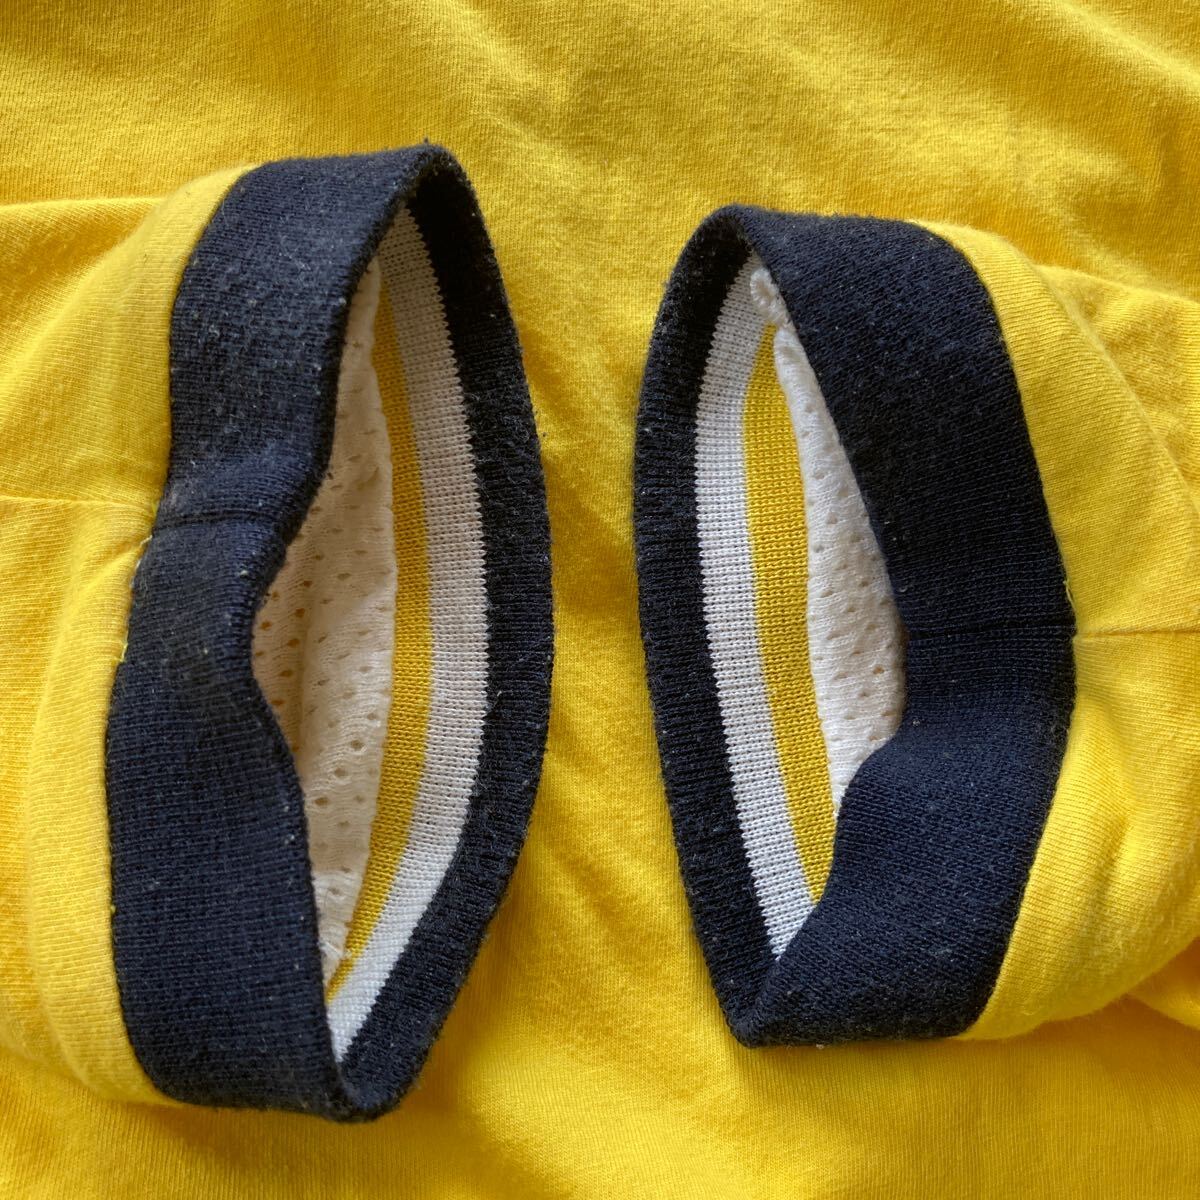 SHIPS( Ships )[ two sheets tailoring | long sleeve *la gran * T-shirt ( inside side : mesh )] yellow | cotton 100%|SIZE:2-M